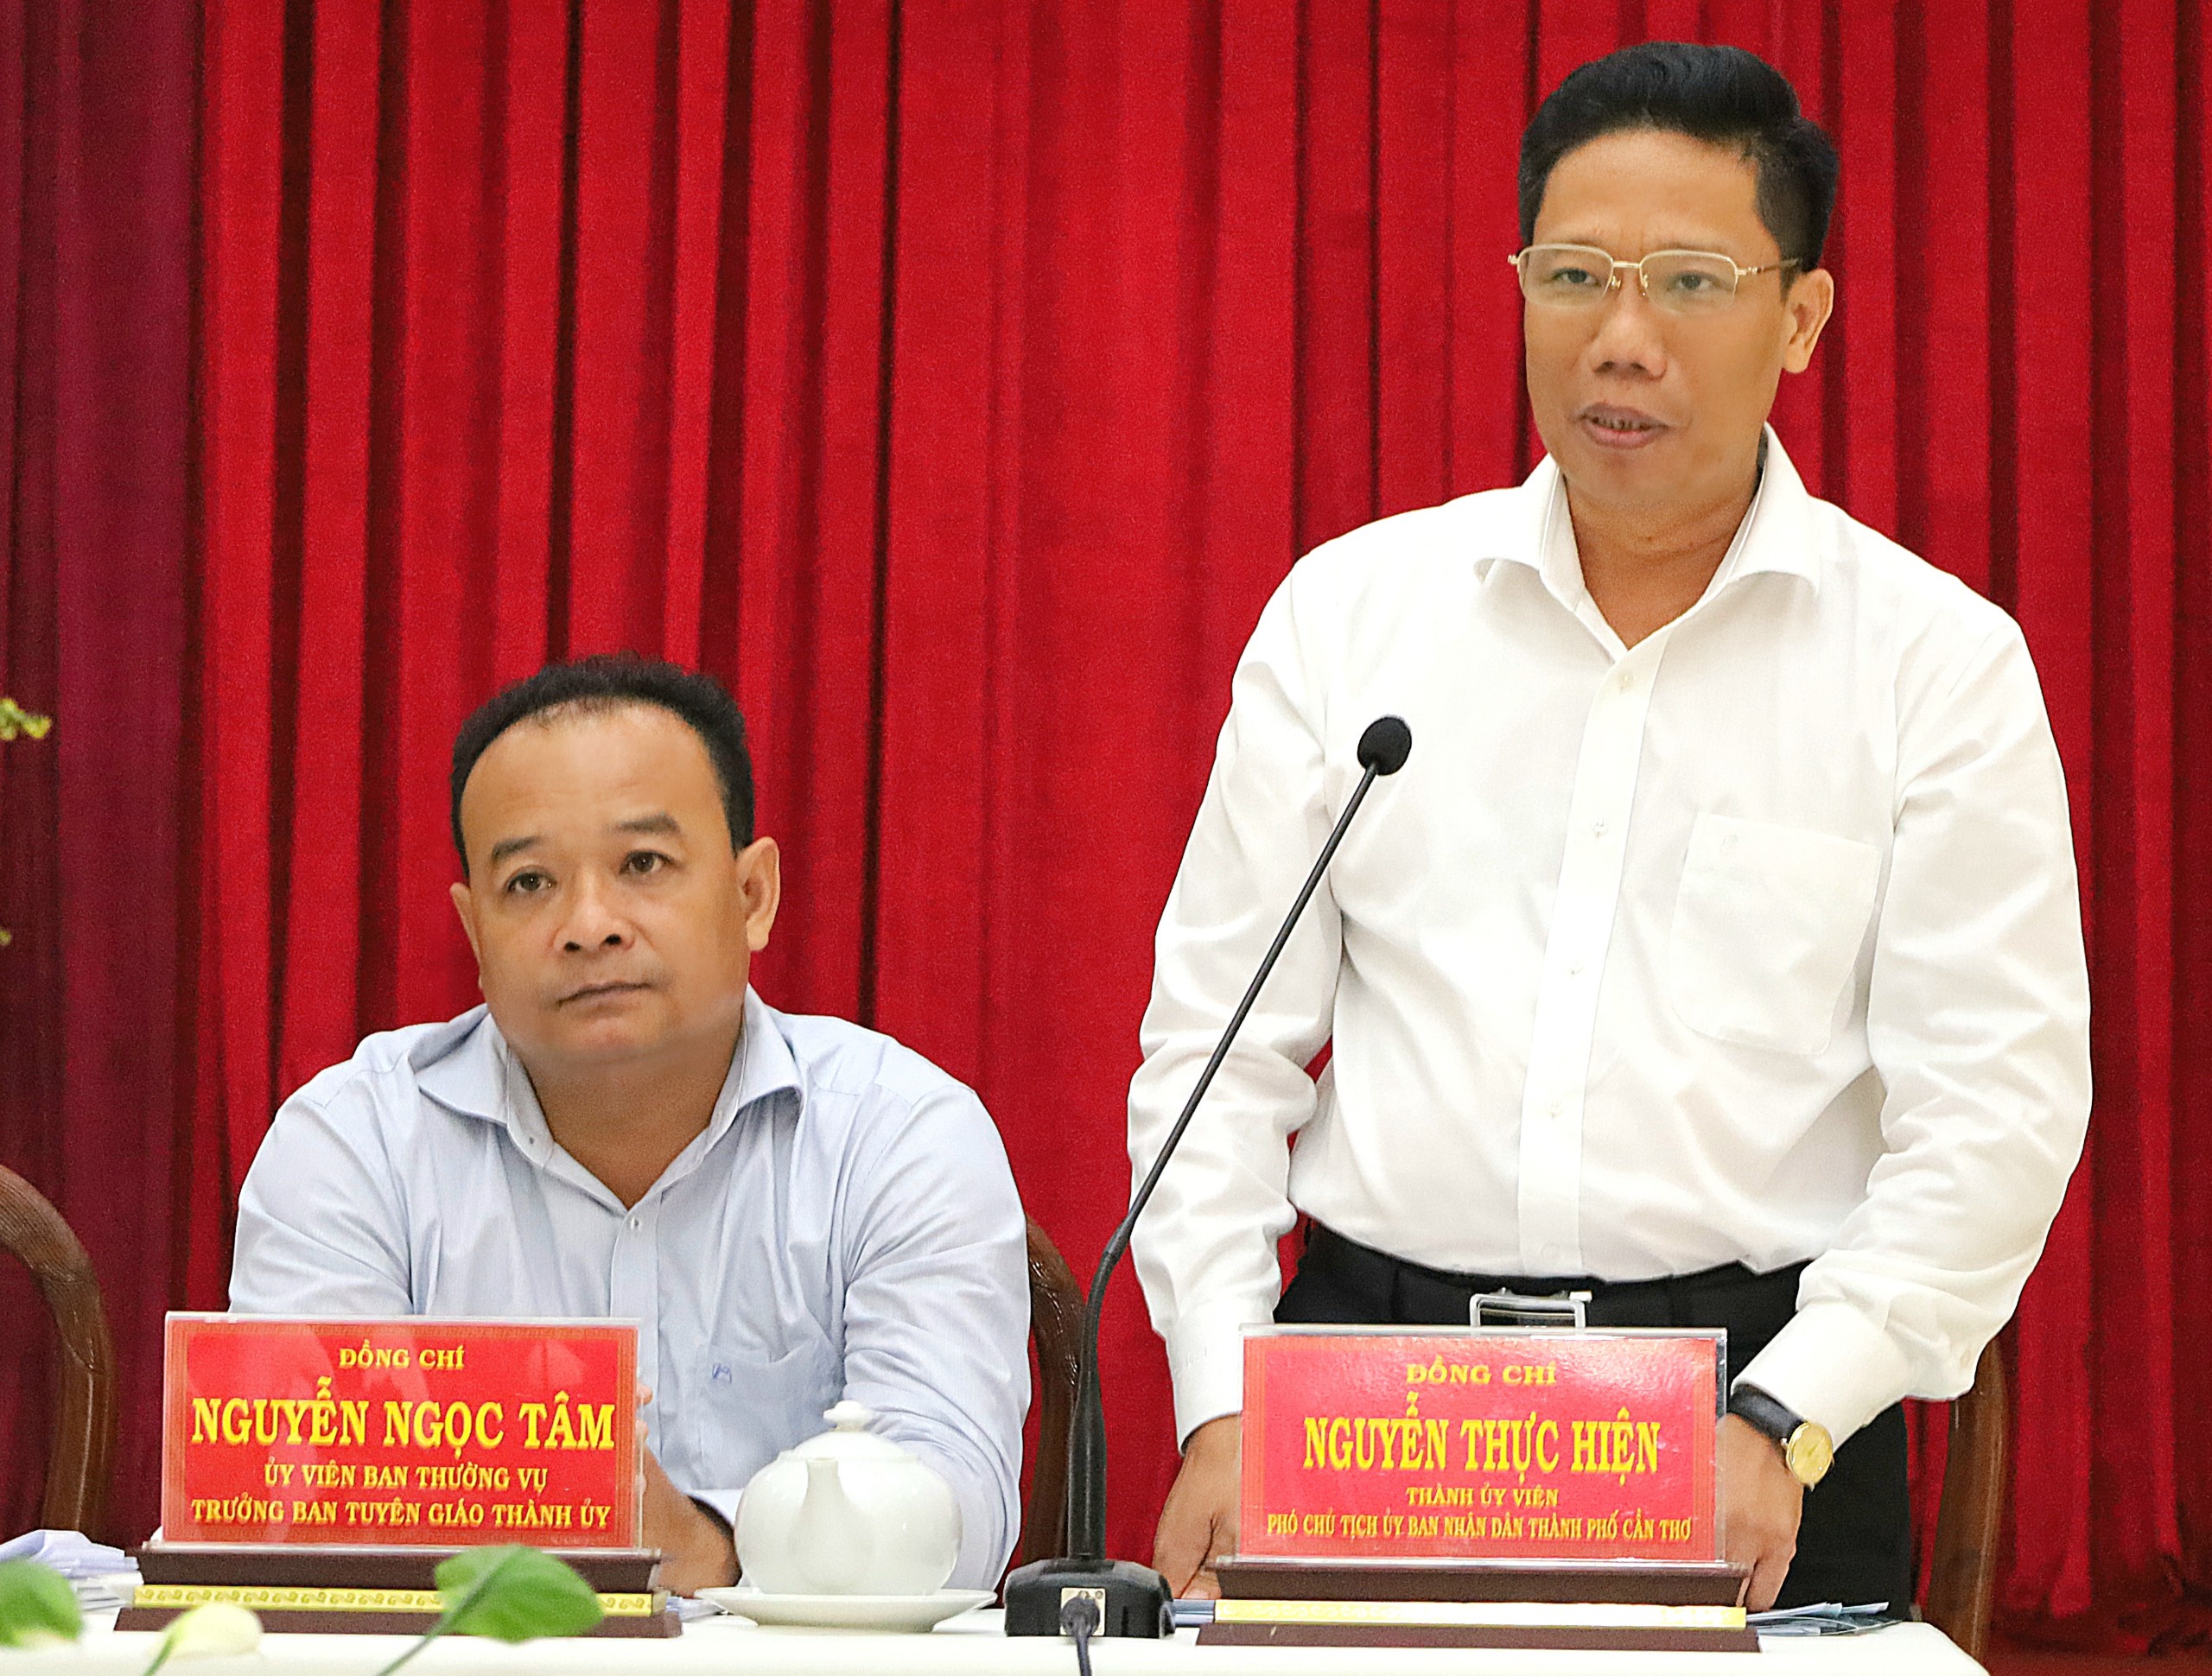 Ông Nguyễn Thực Hiện - Phó Chủ tịch UBND TP. Cần Thơ phát biểu tại buổi làm việc.